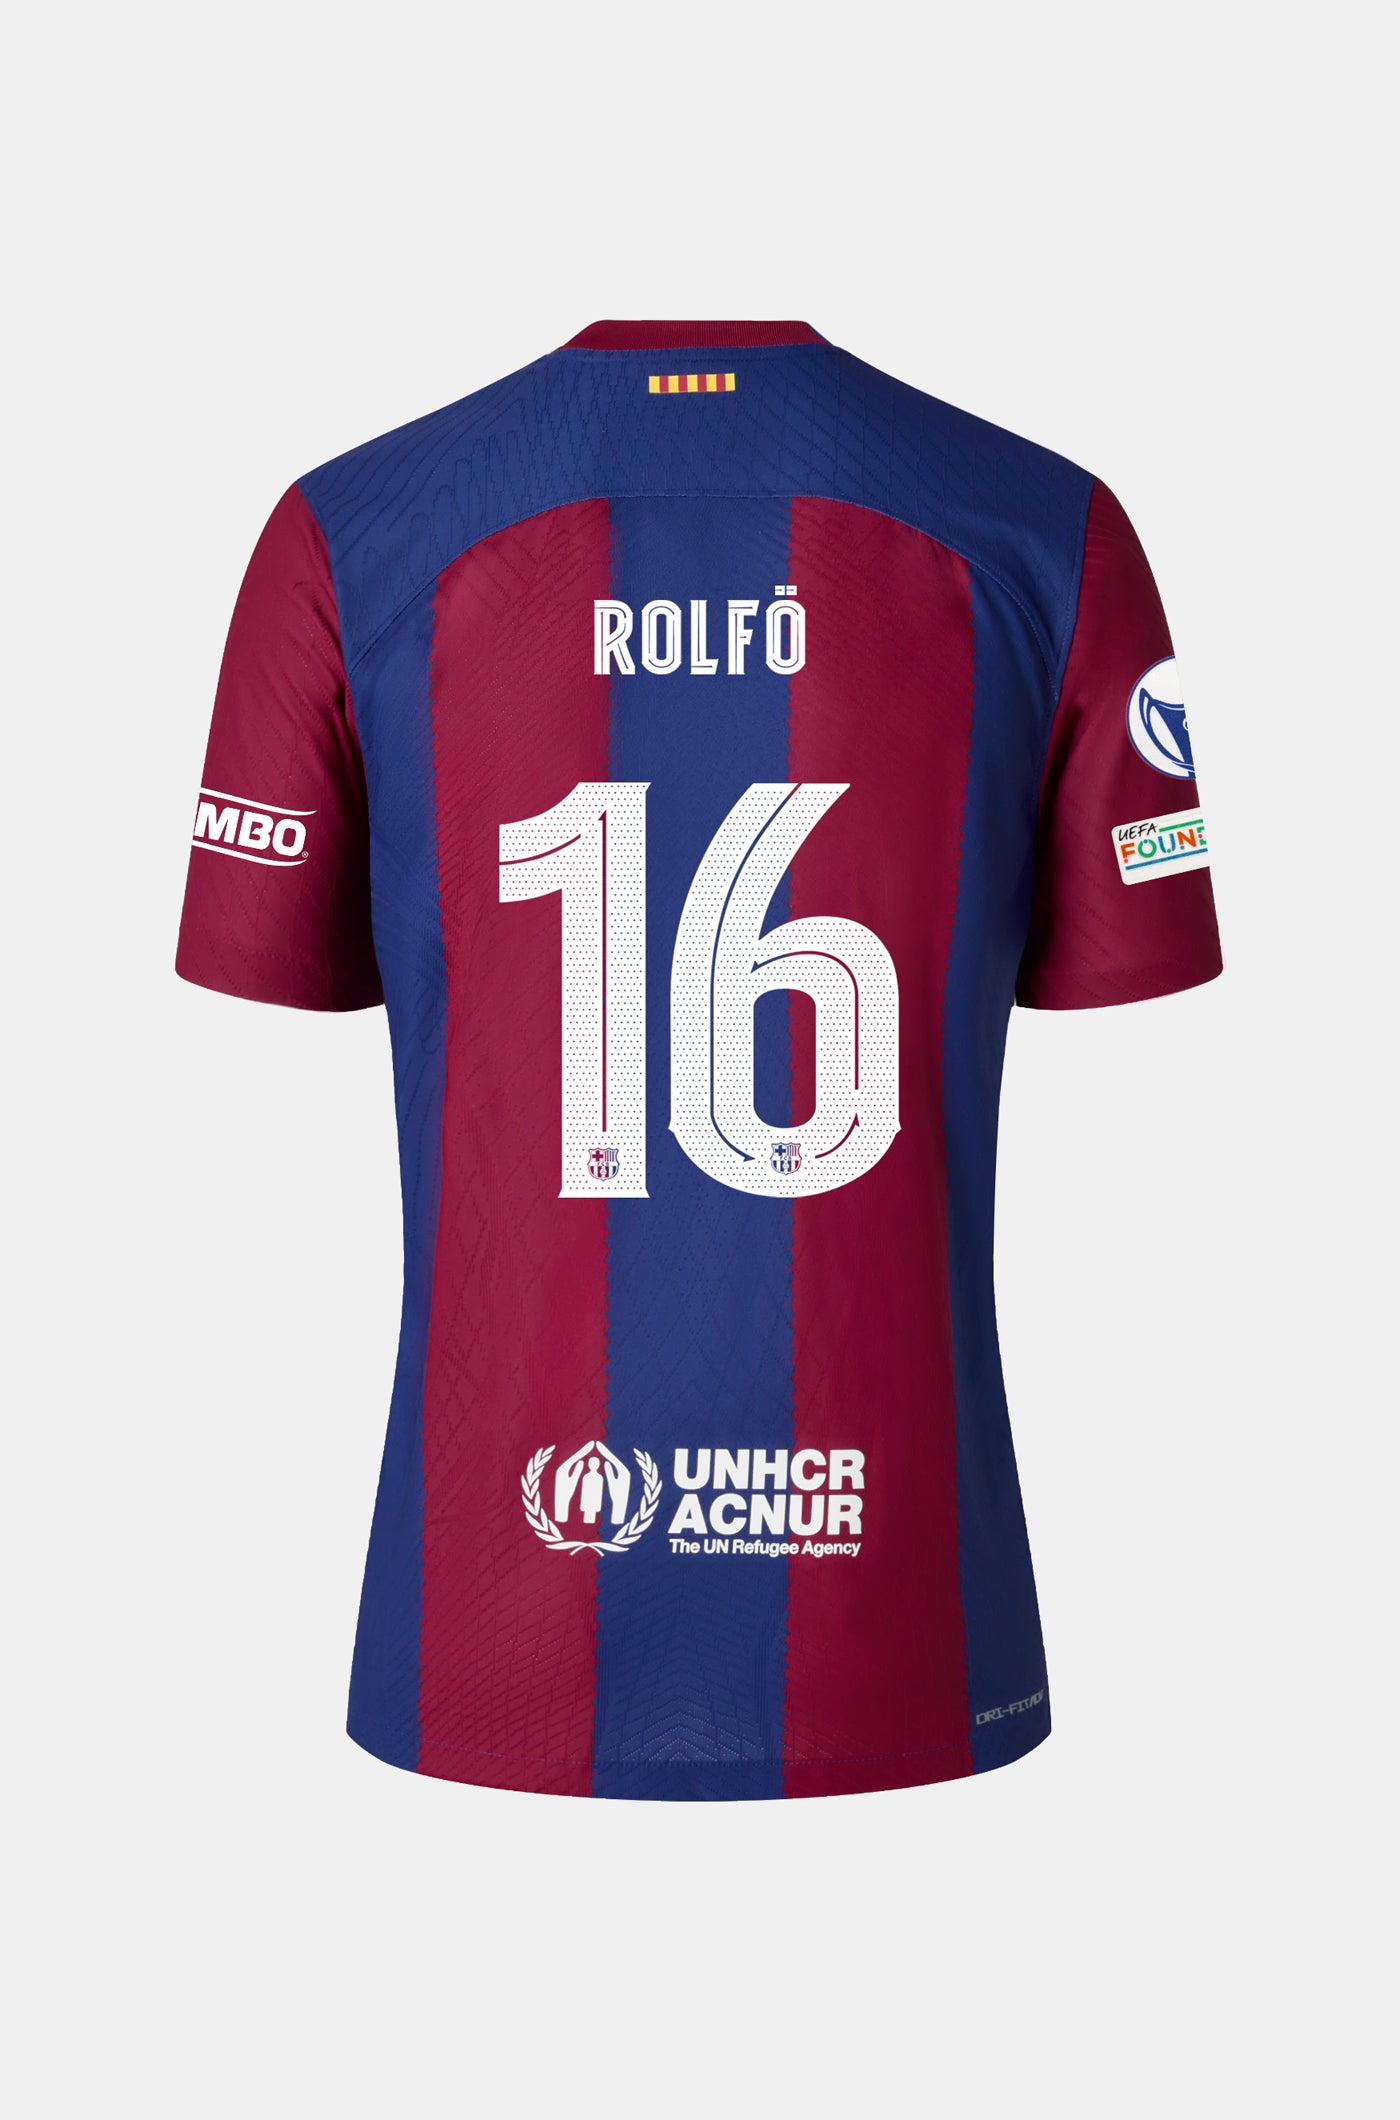 UWCL Samarreta primer equipament FC Barcelona 23/24 - Home - ROLFÖ